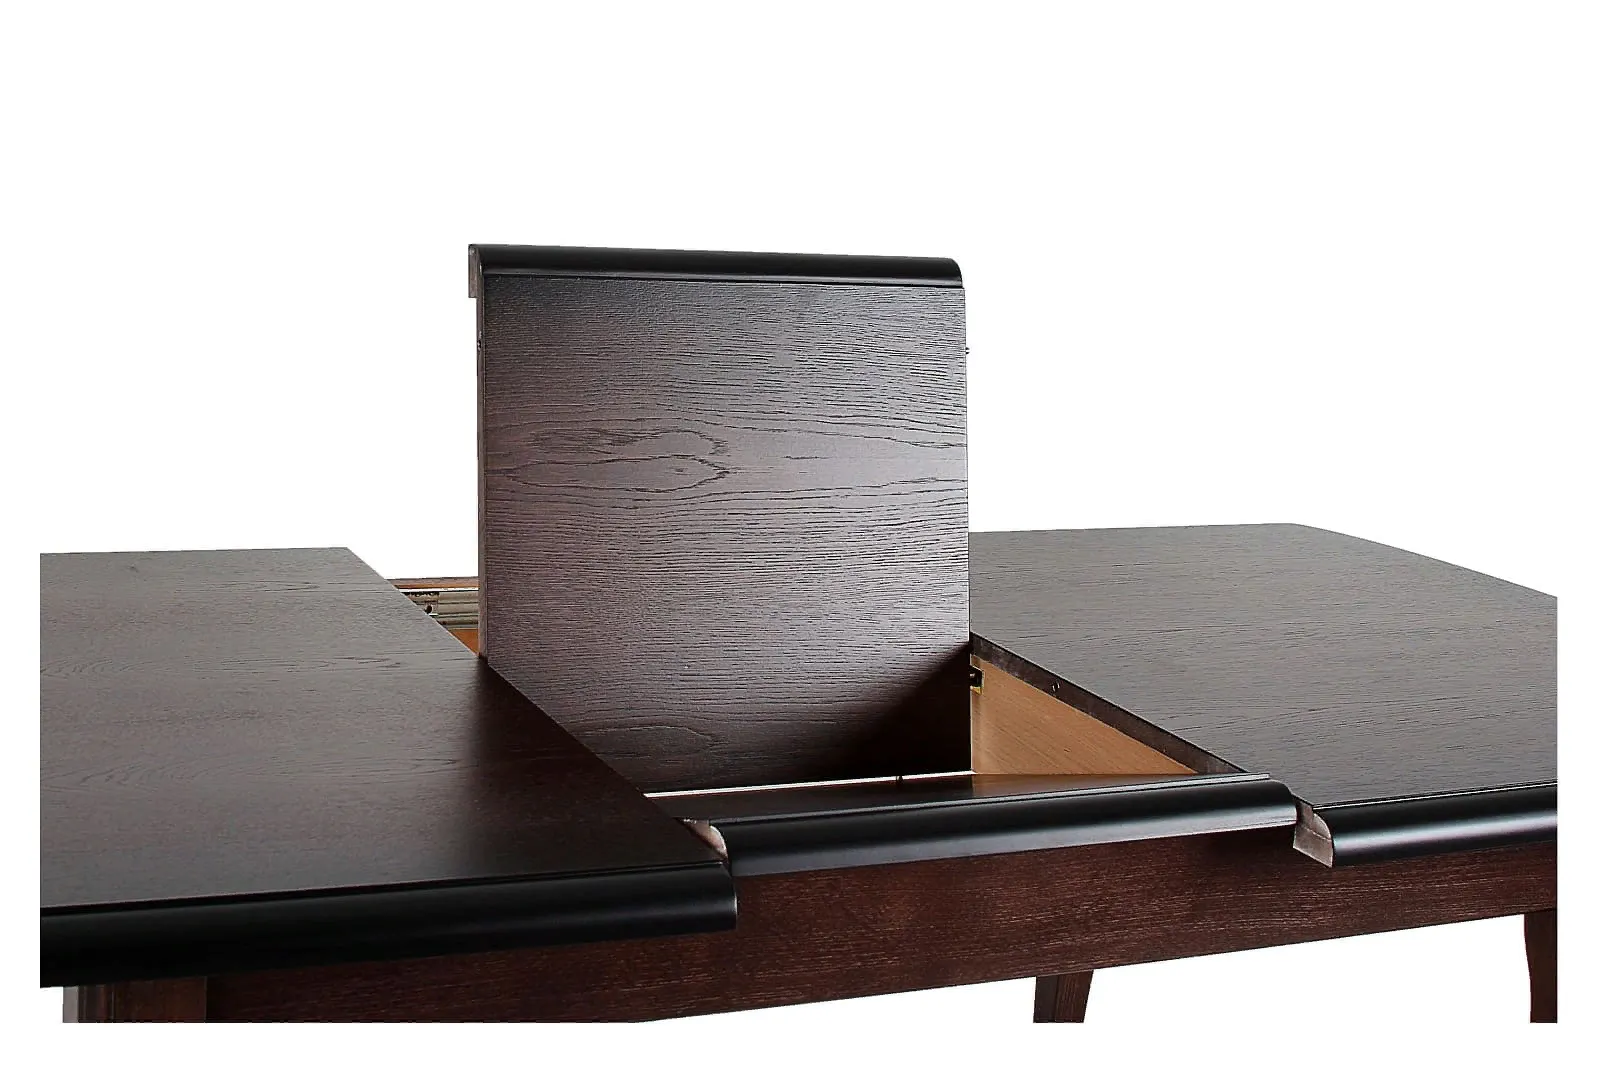 LEVOX T2 стол раскладной 130/170 см (венге)